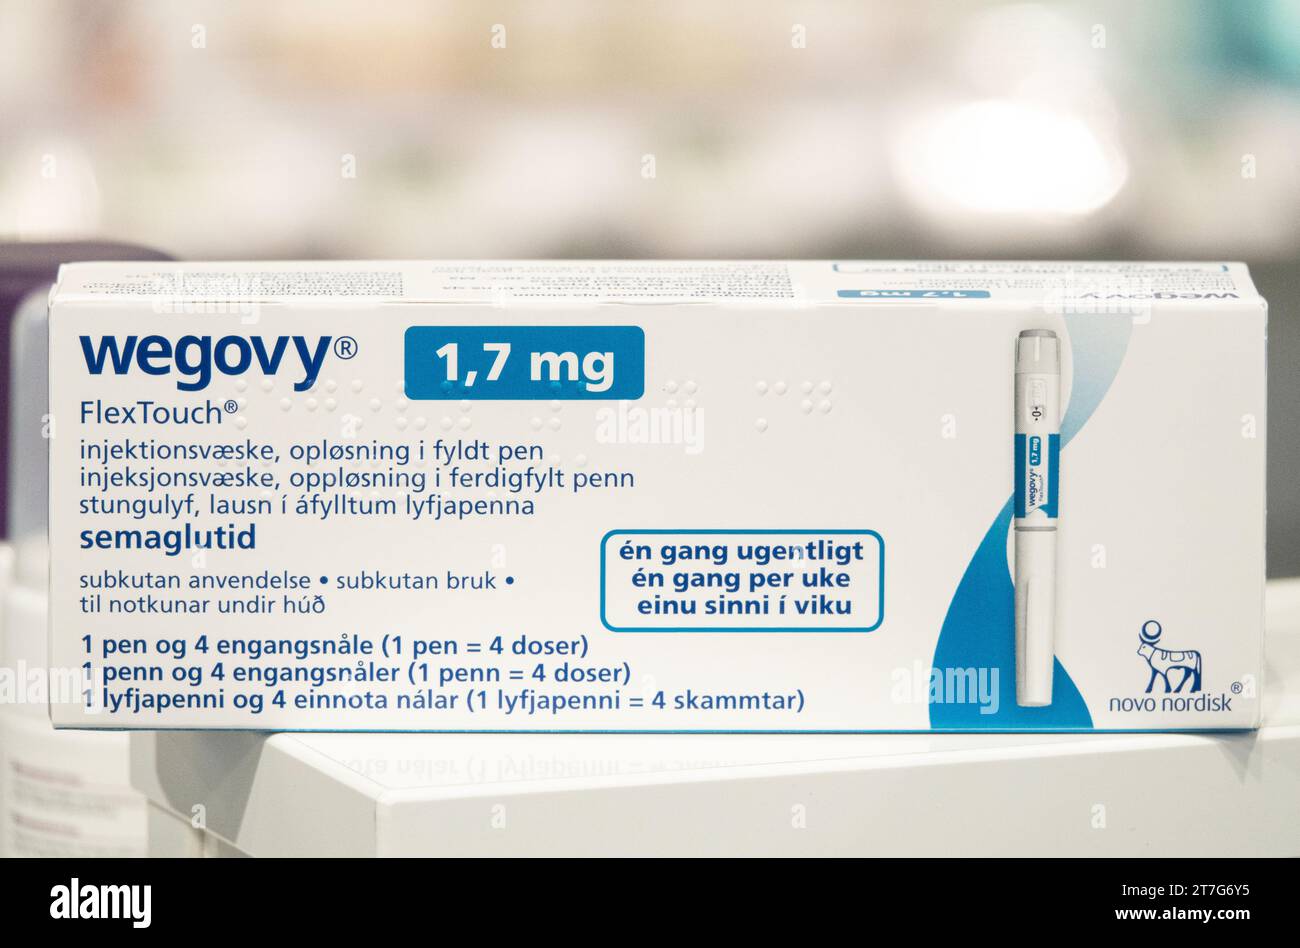 Boîte d'emballage de Wegovy (semaglutide) médicament injectable sur ordonnance, médicament de perte de poids de Novo Nordisk AS. Copenhague, Danemark - 13 août 2023 Banque D'Images